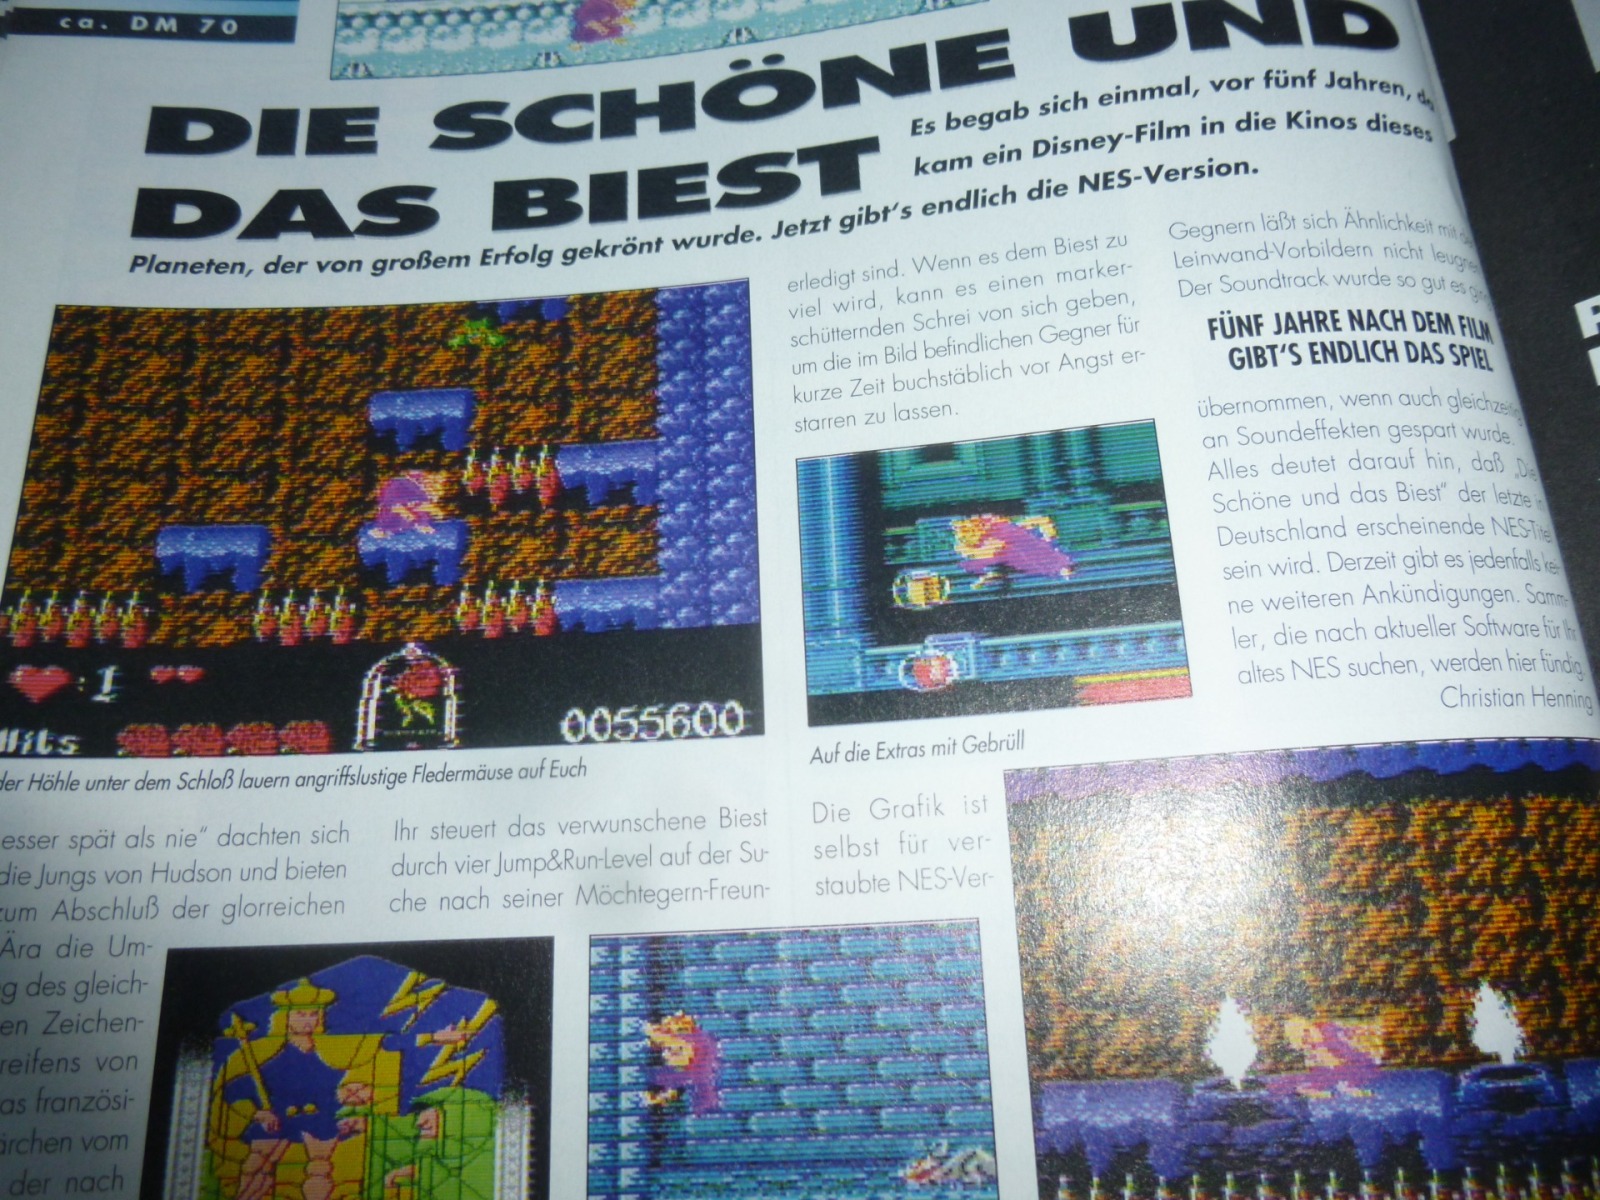 TOTAL Das unabhängige Magazin - 100 Nintendo - Ausgabe 4/96 1996 18